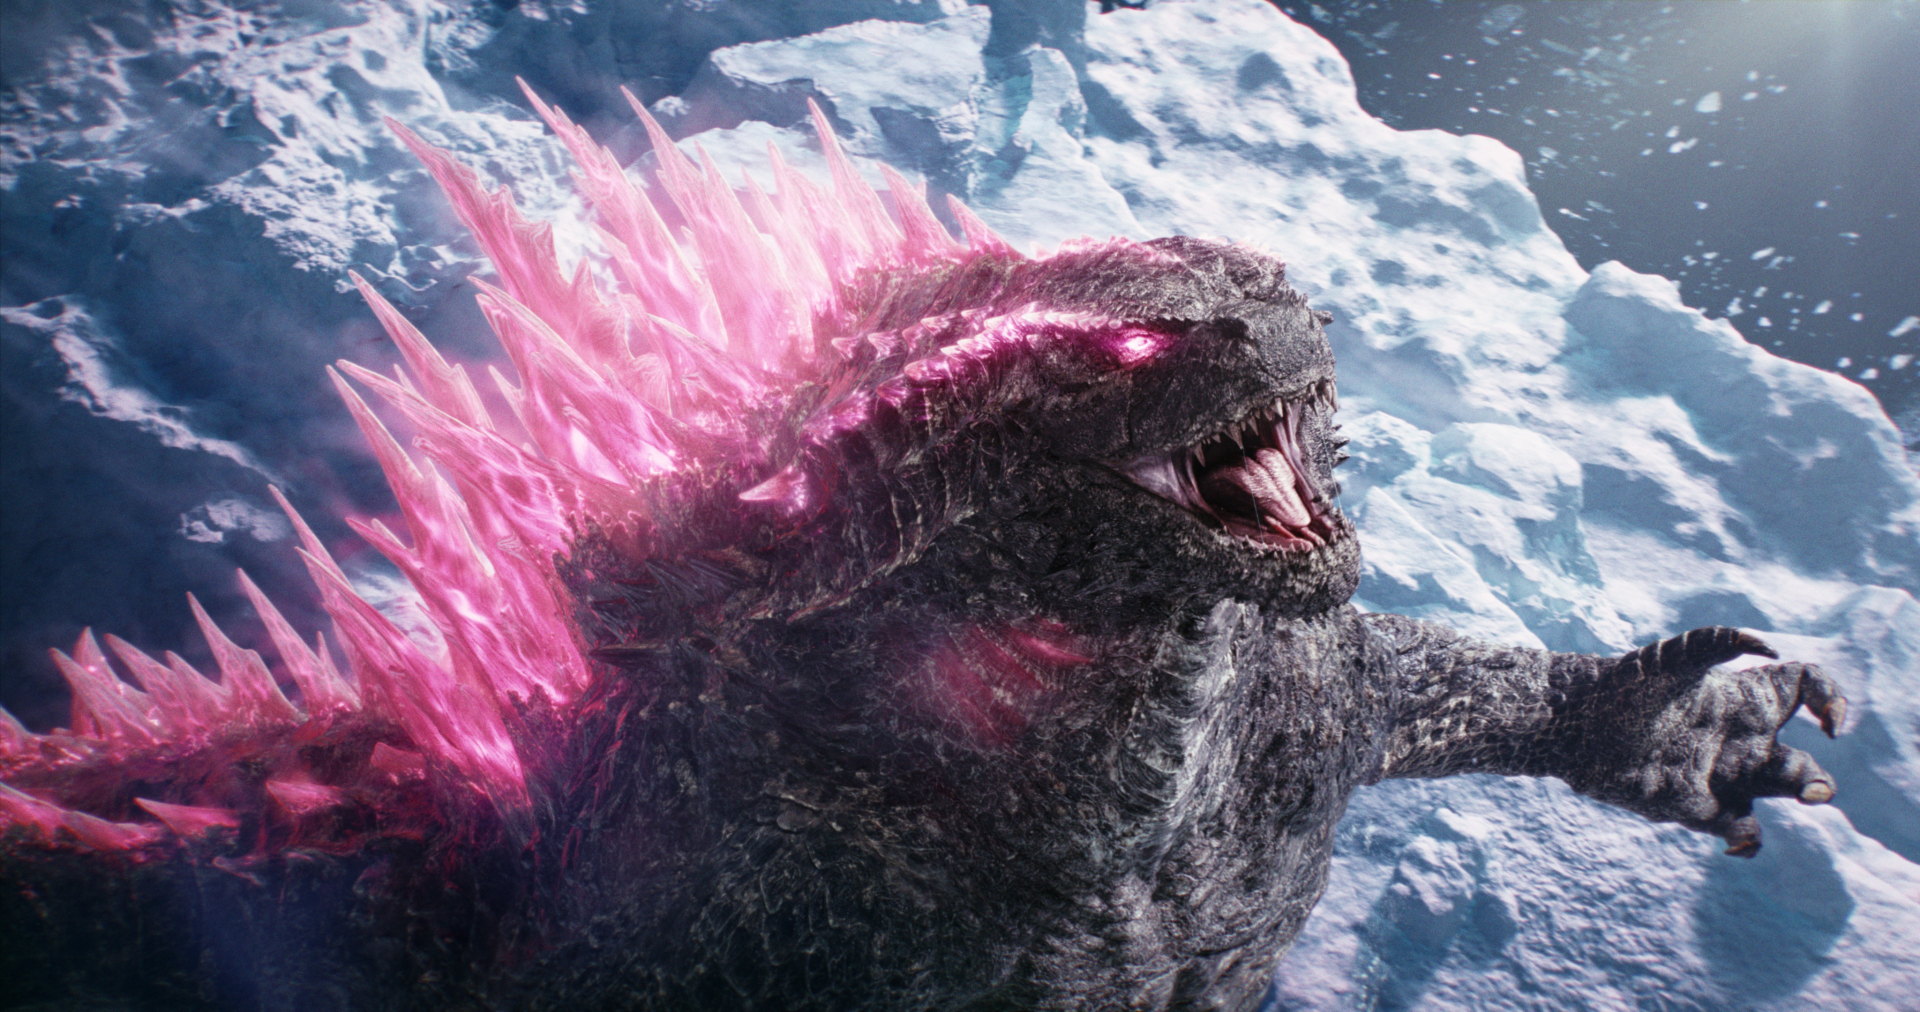 Godzilla x Kong: Đế Chế Mới - Gặp gỡ các nhân vật chính trong phần phim mới về hai titan vĩ đại bậc nhất - ảnh 1